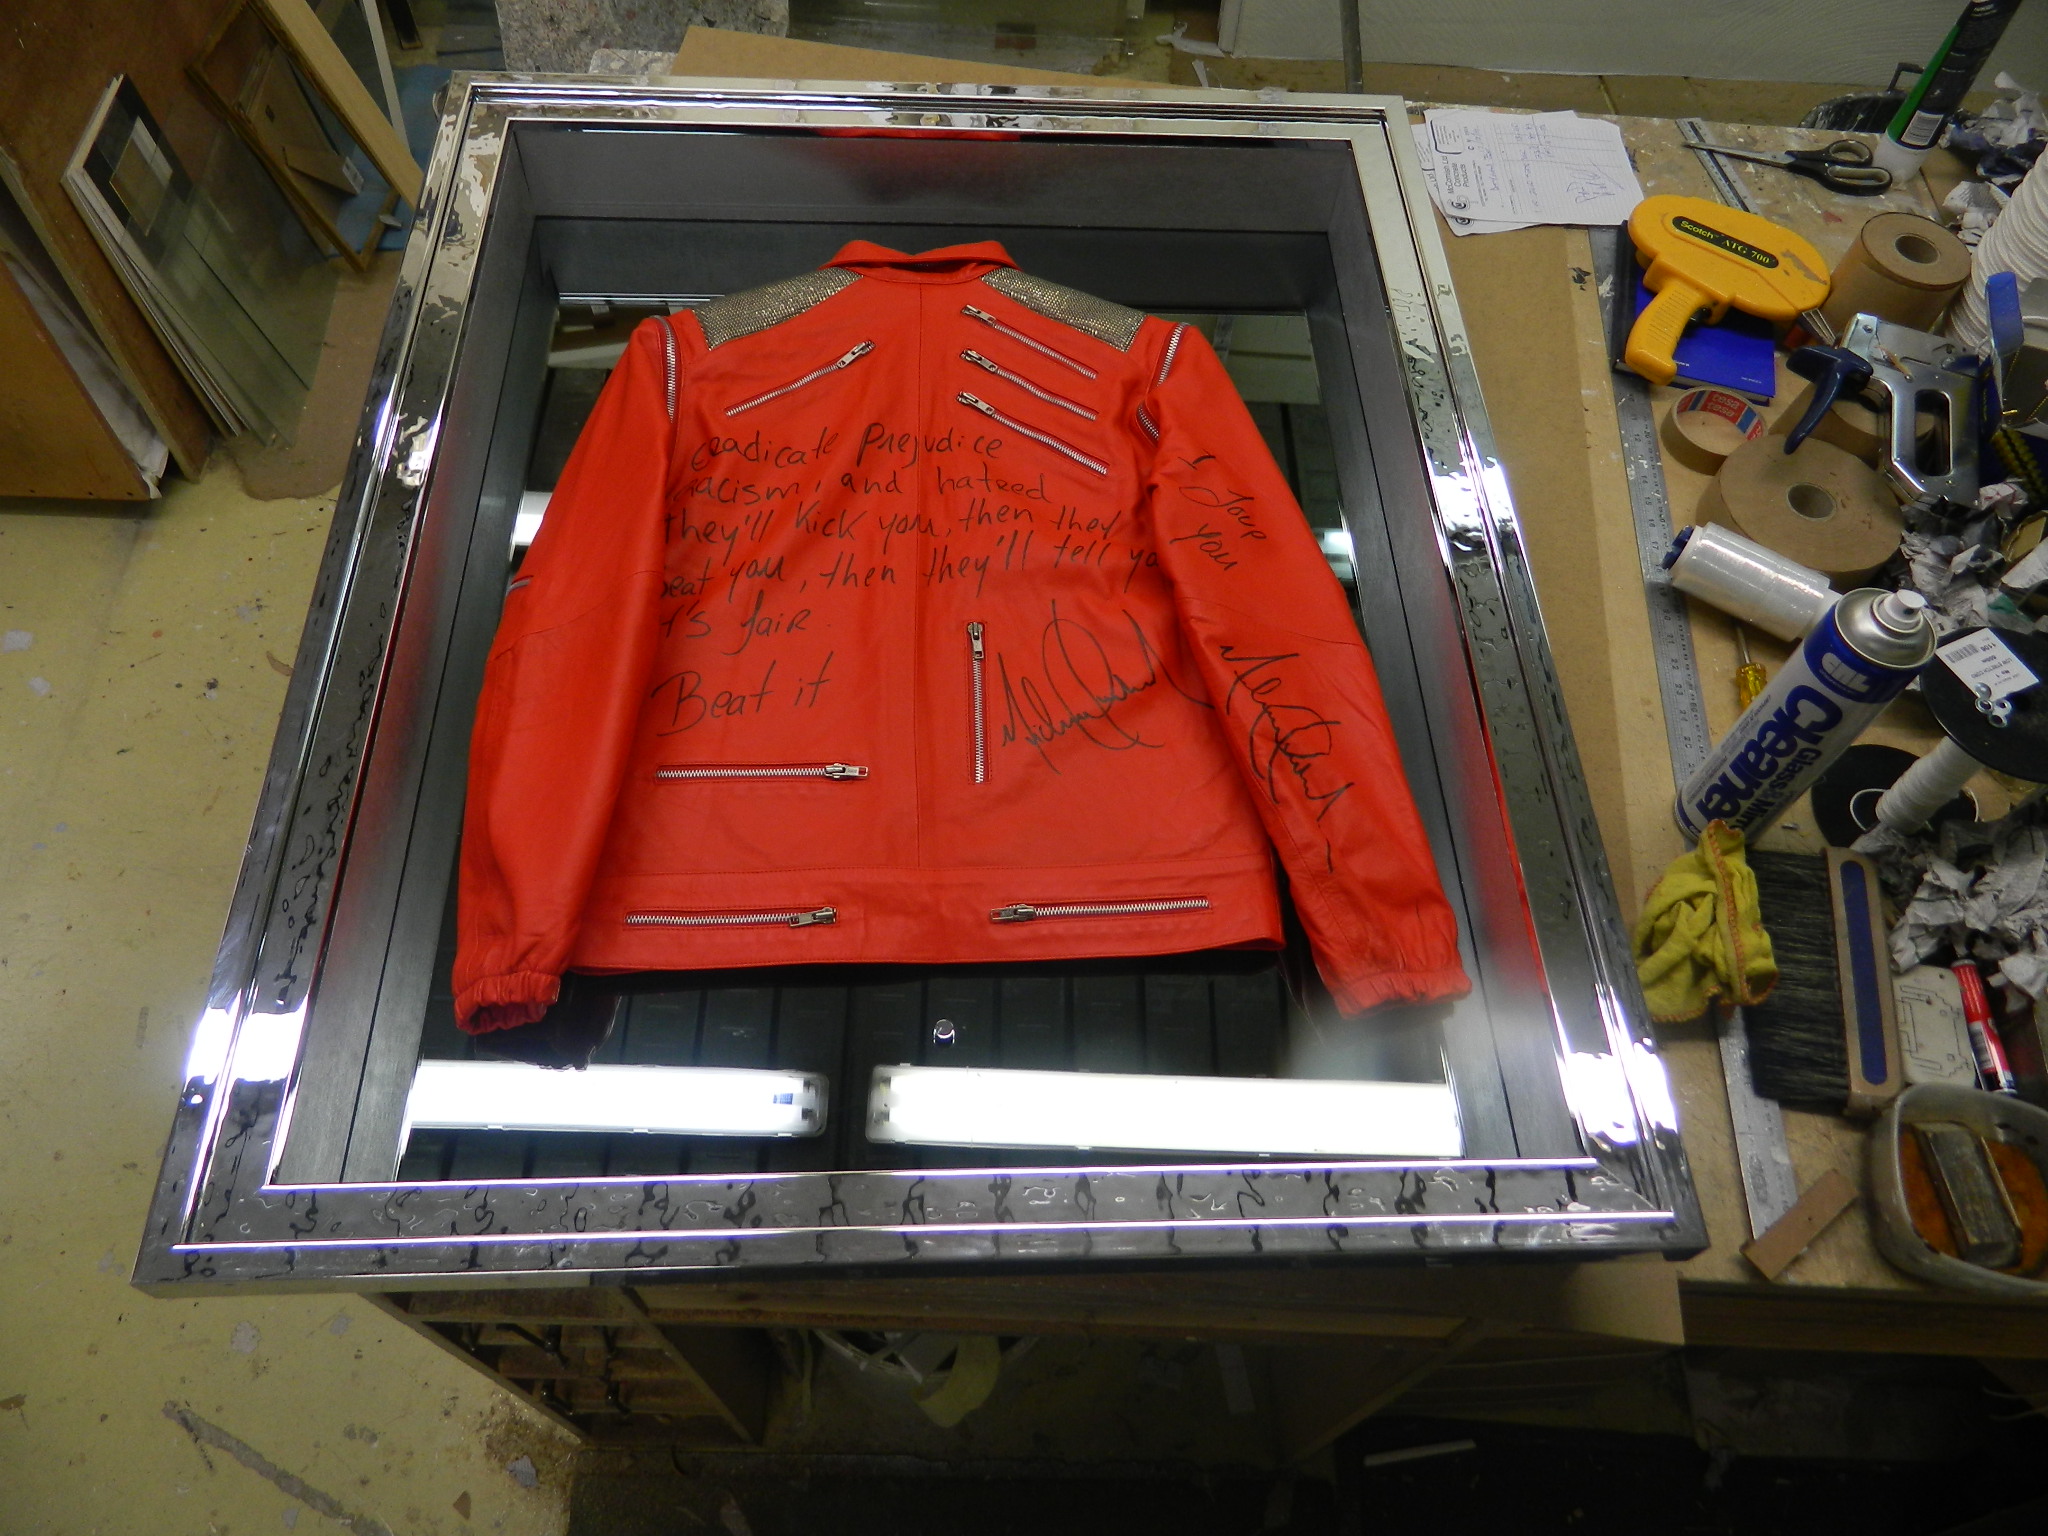 Michael Jackson's signed jacket